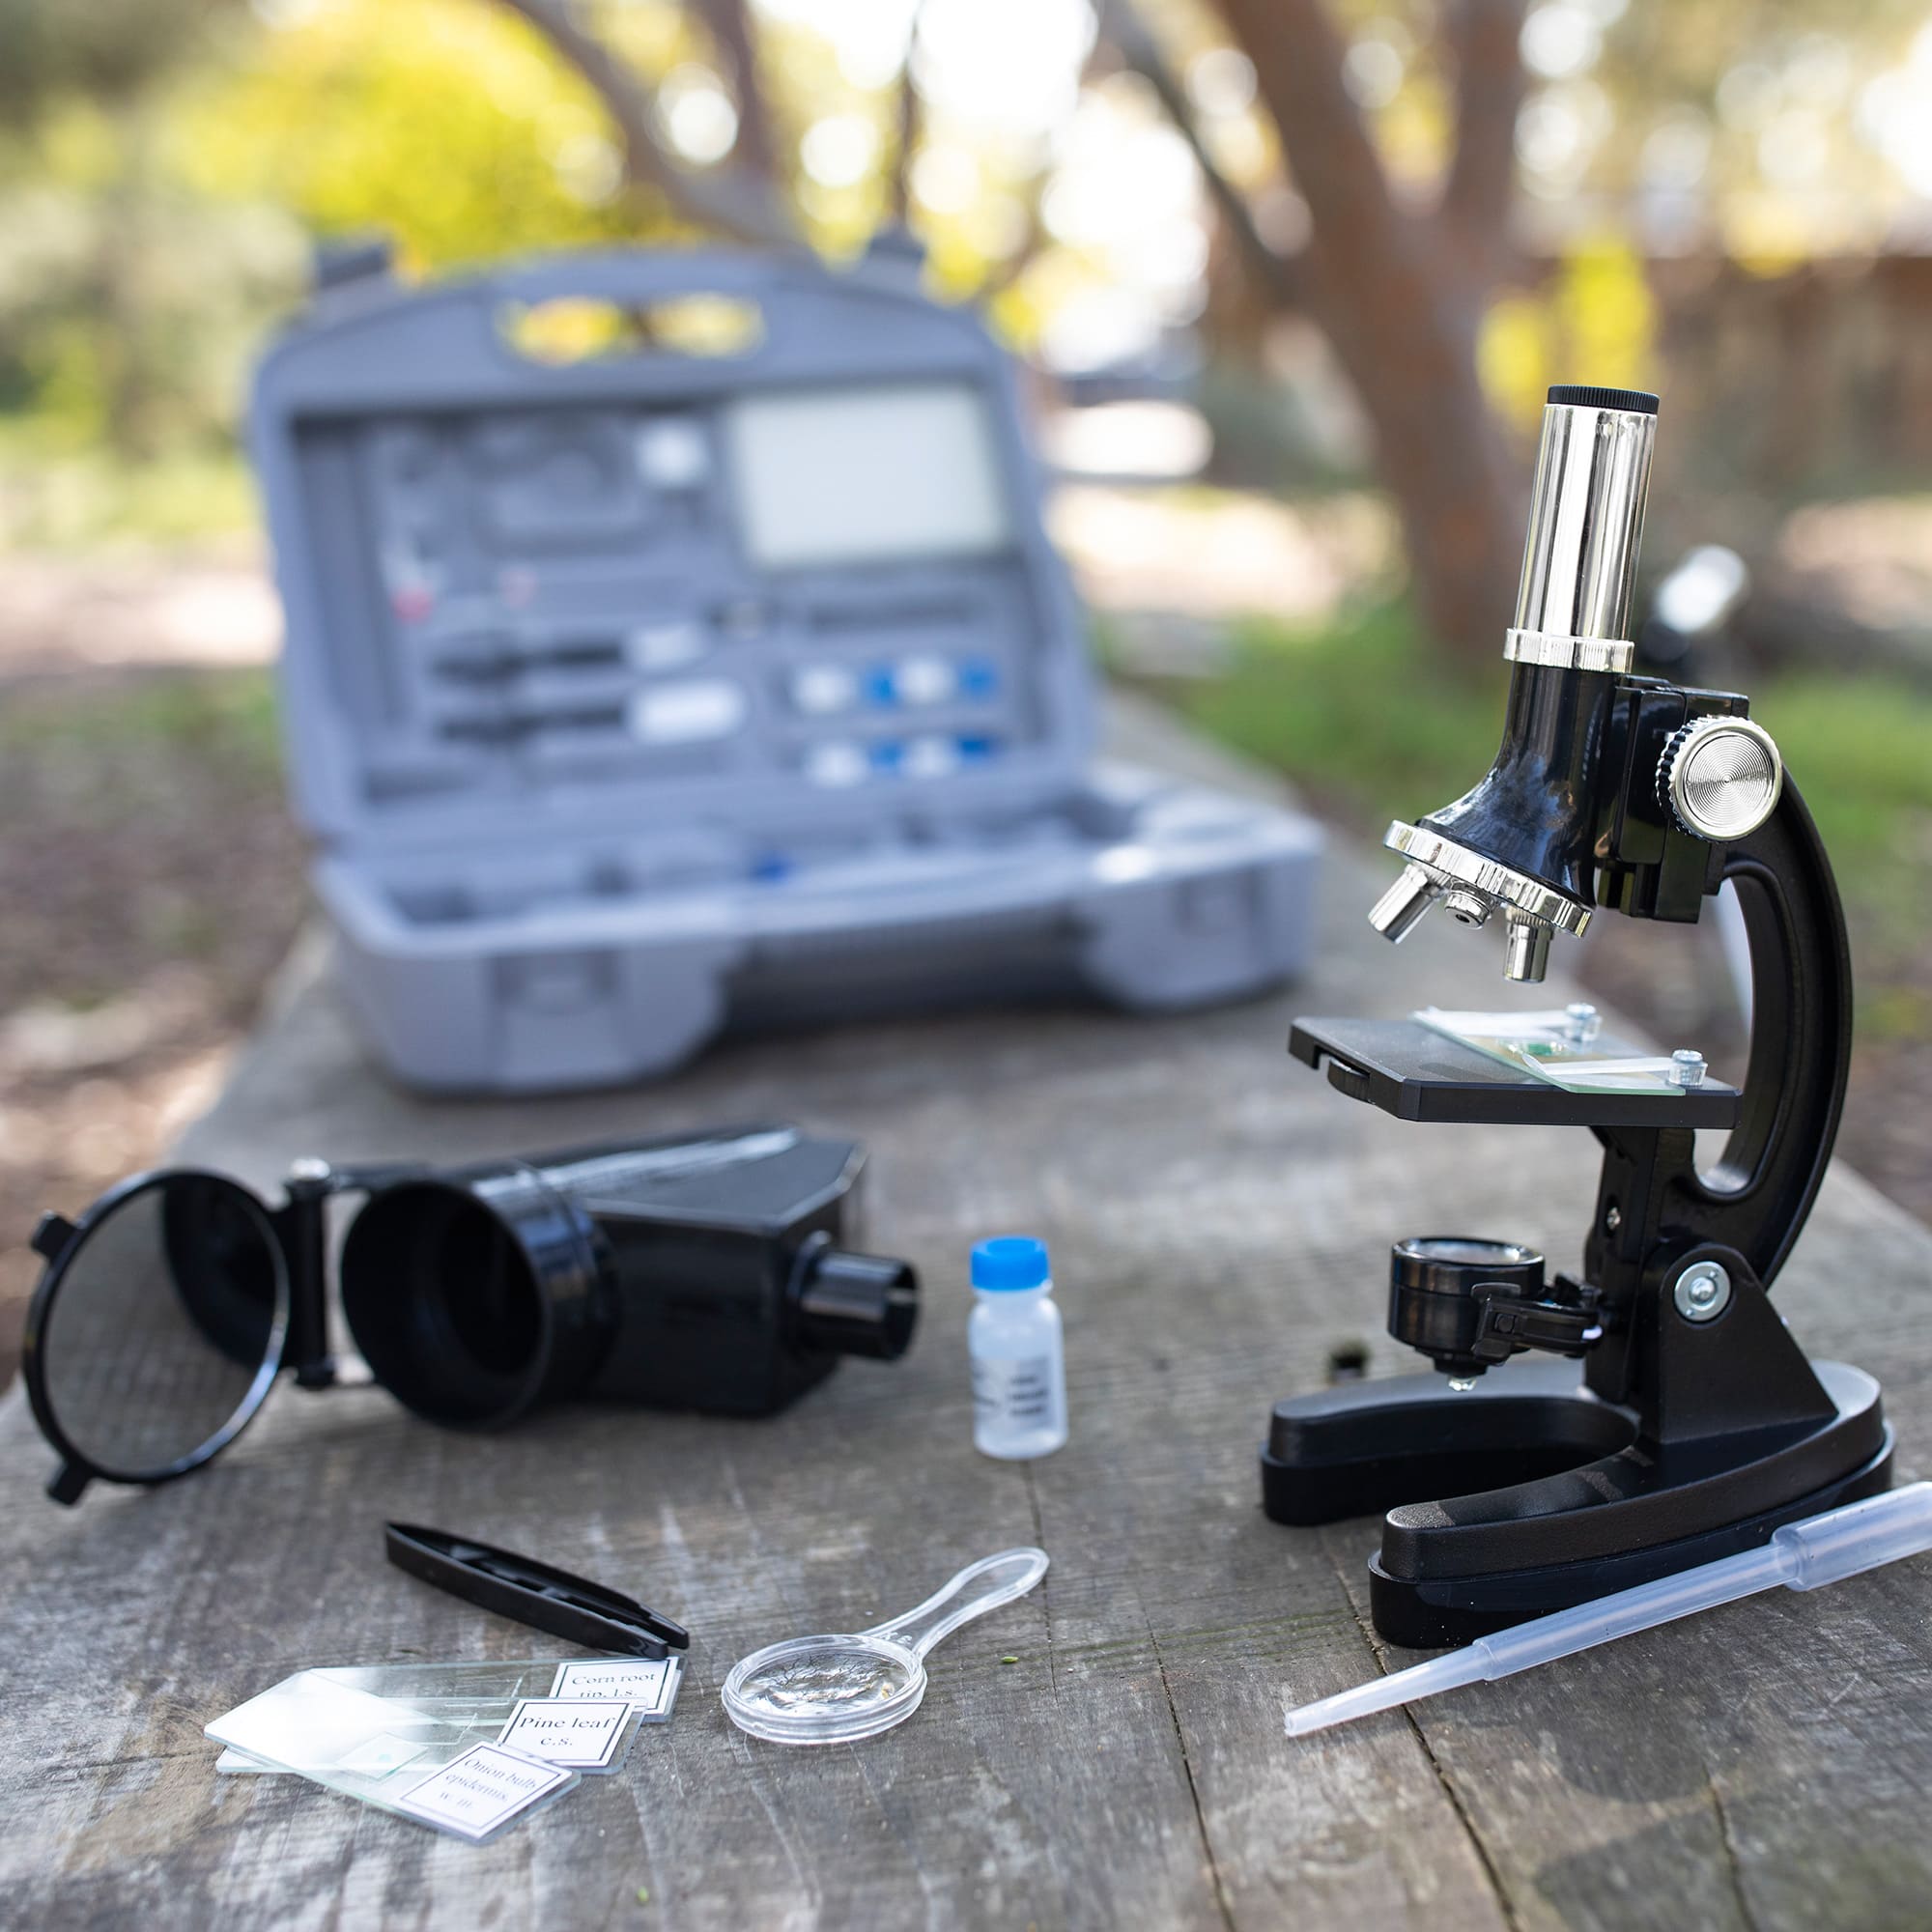 Mikroskop można wykorzystać podczas zajęć przyrody w terenie